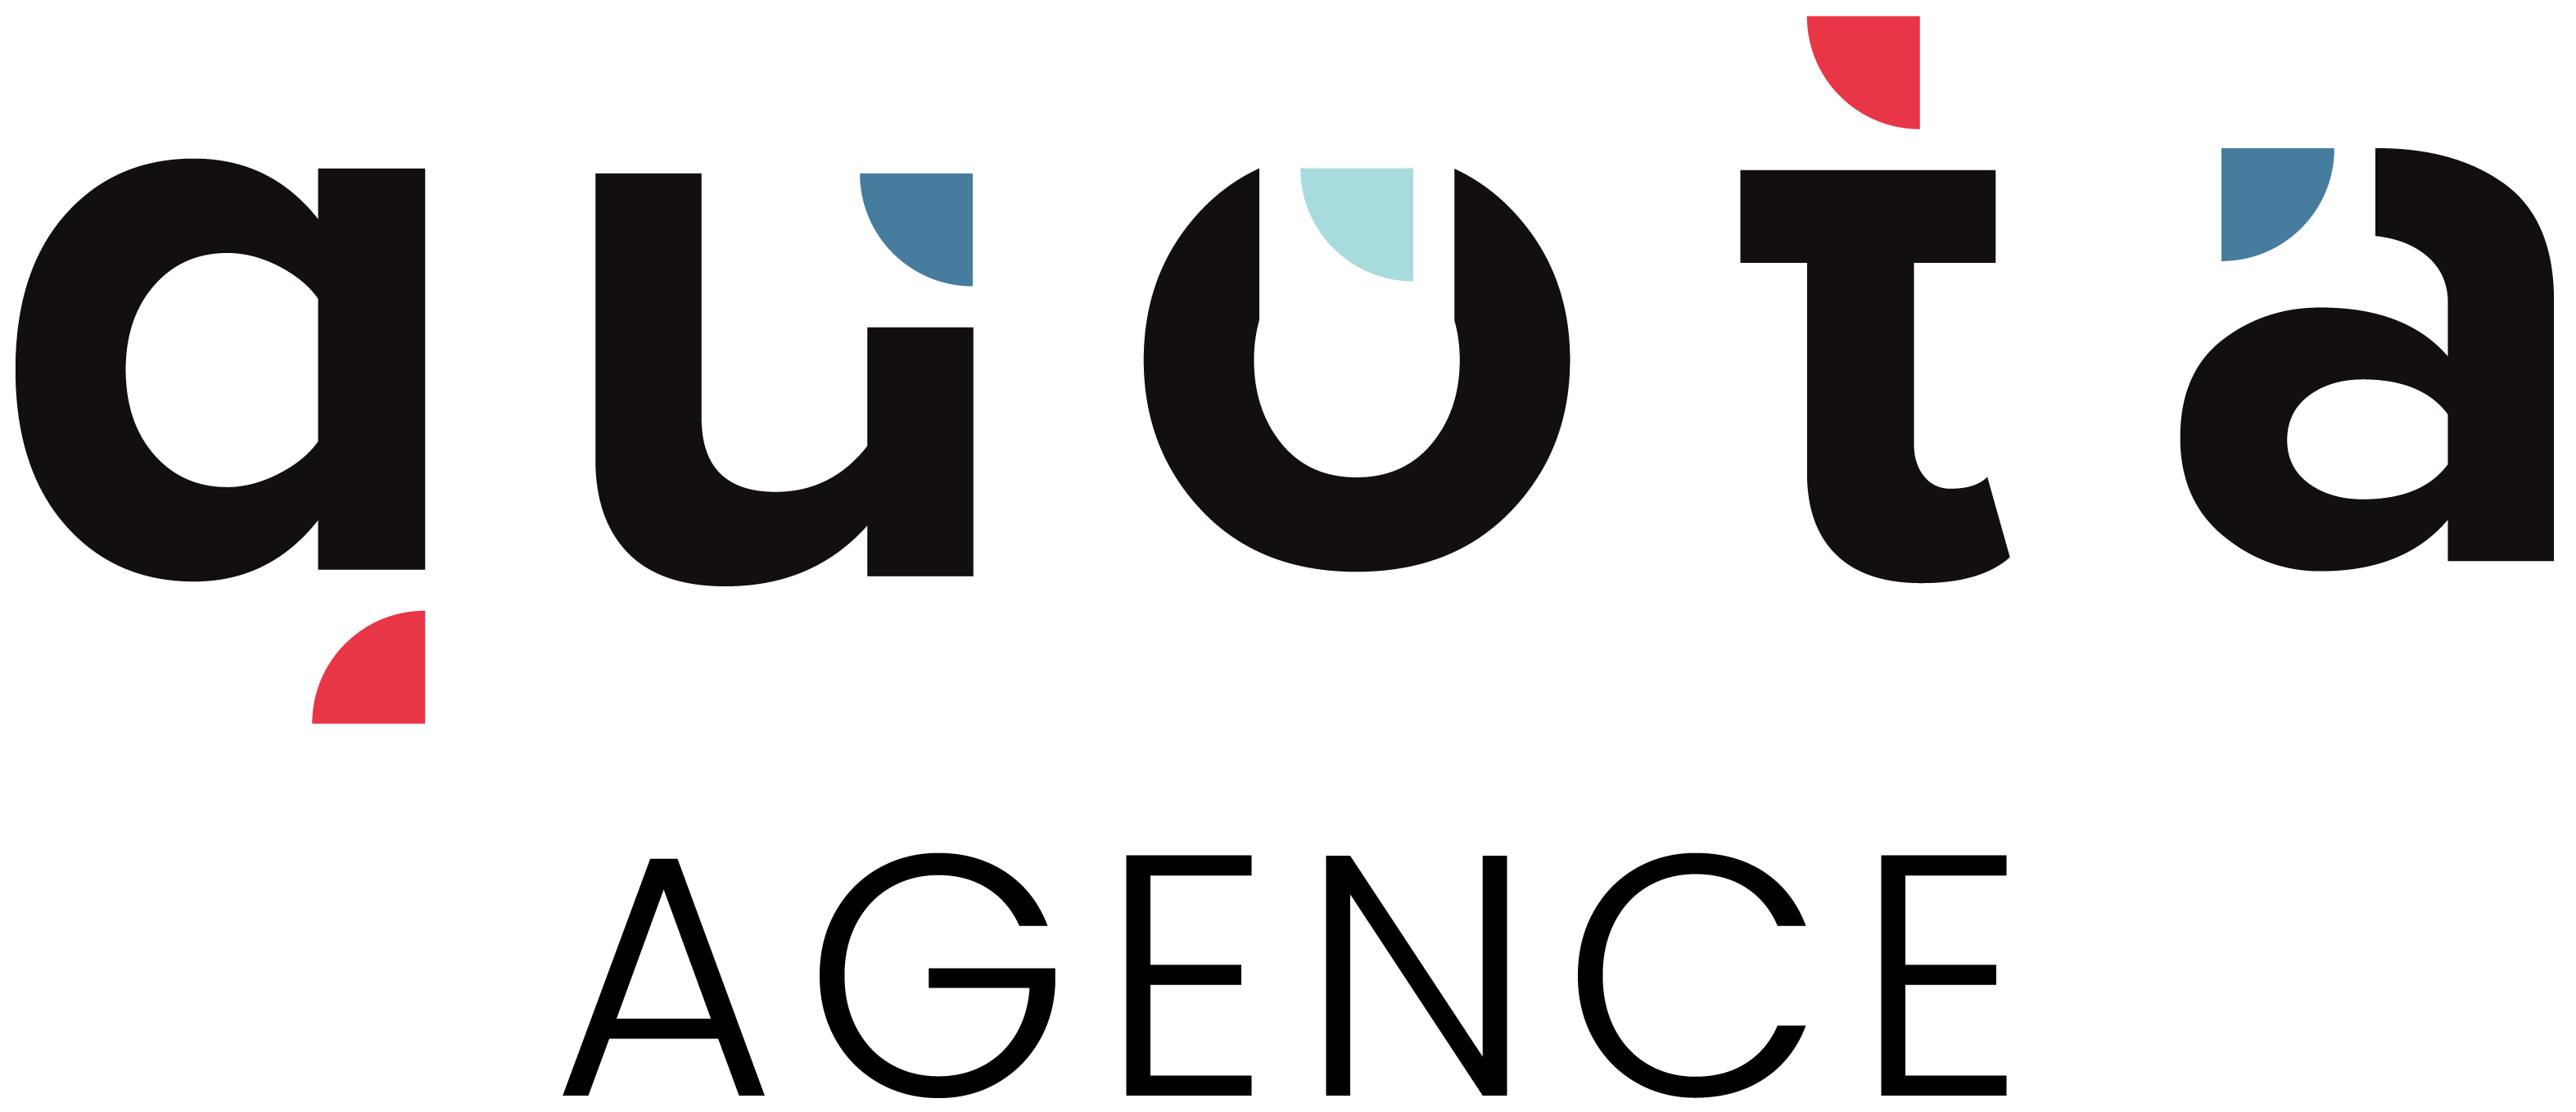 logo de l'agence web quota en noir